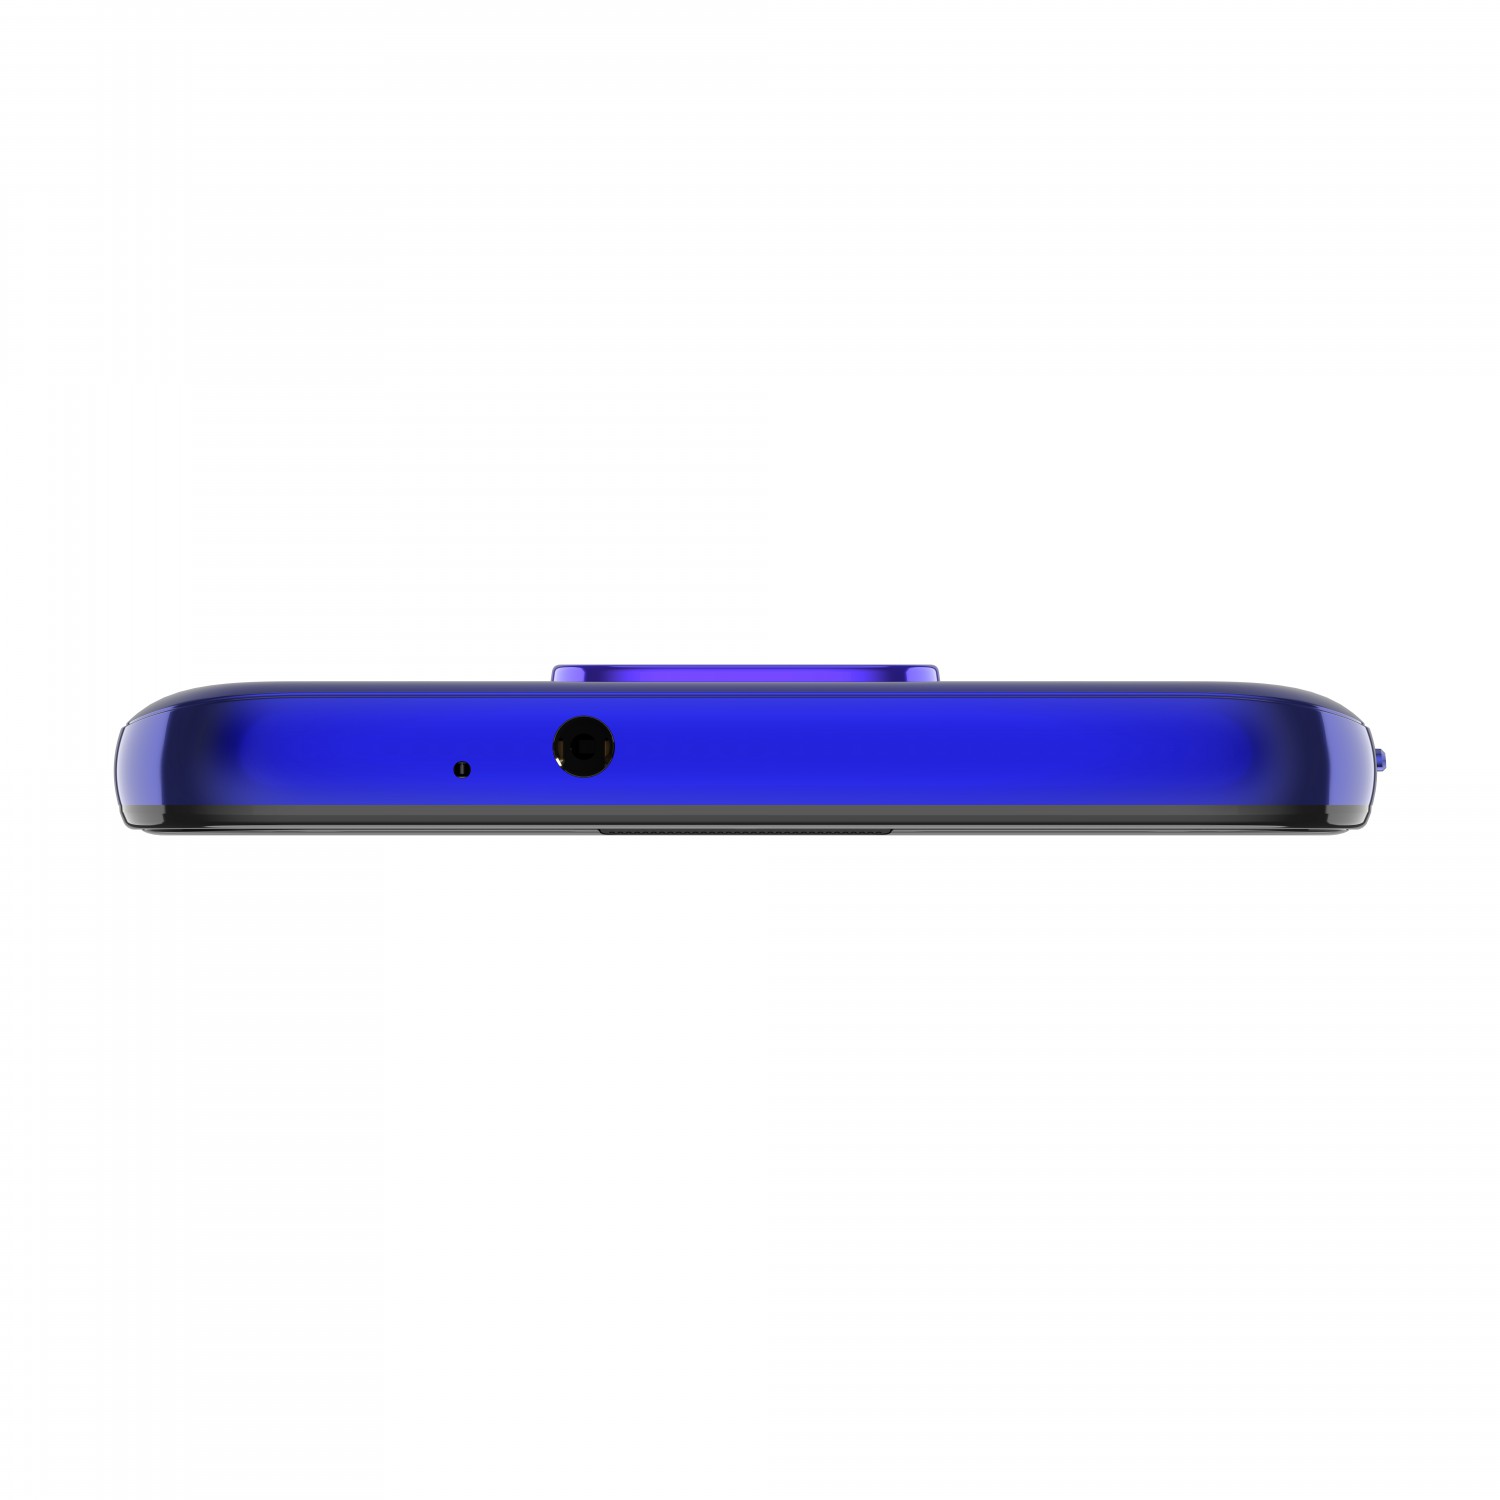 Motorola Moto G9 Play 4GB/64GB Sapphire Blue